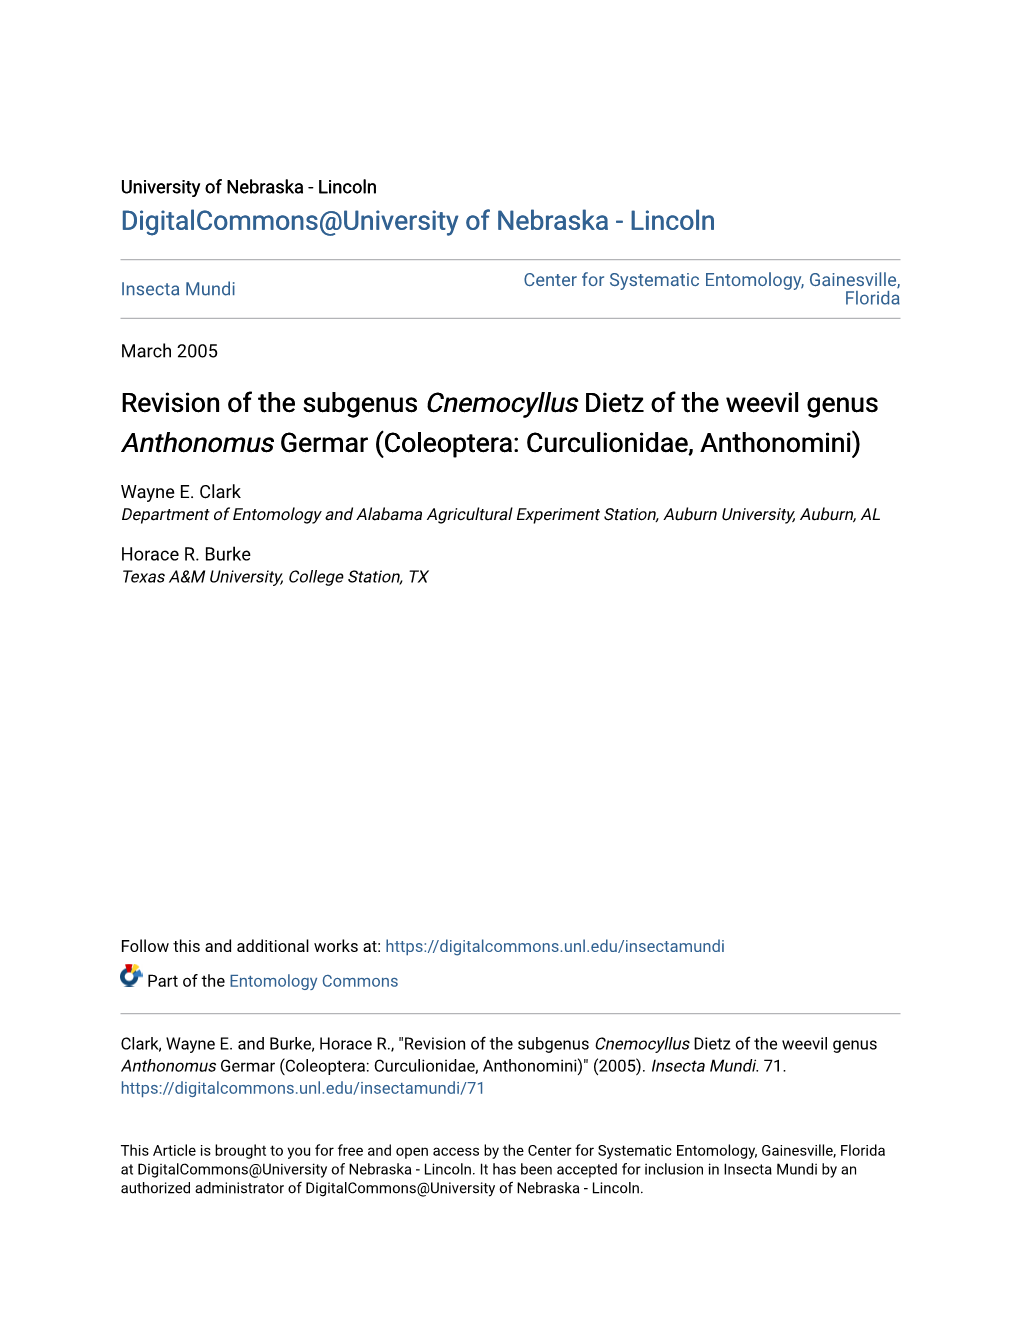 Revision of the Subgenus Cnemocyllus Dietz of the Weevil Genus Anthonomus Germar (Coleoptera: Curculionidae, Anthonomini)